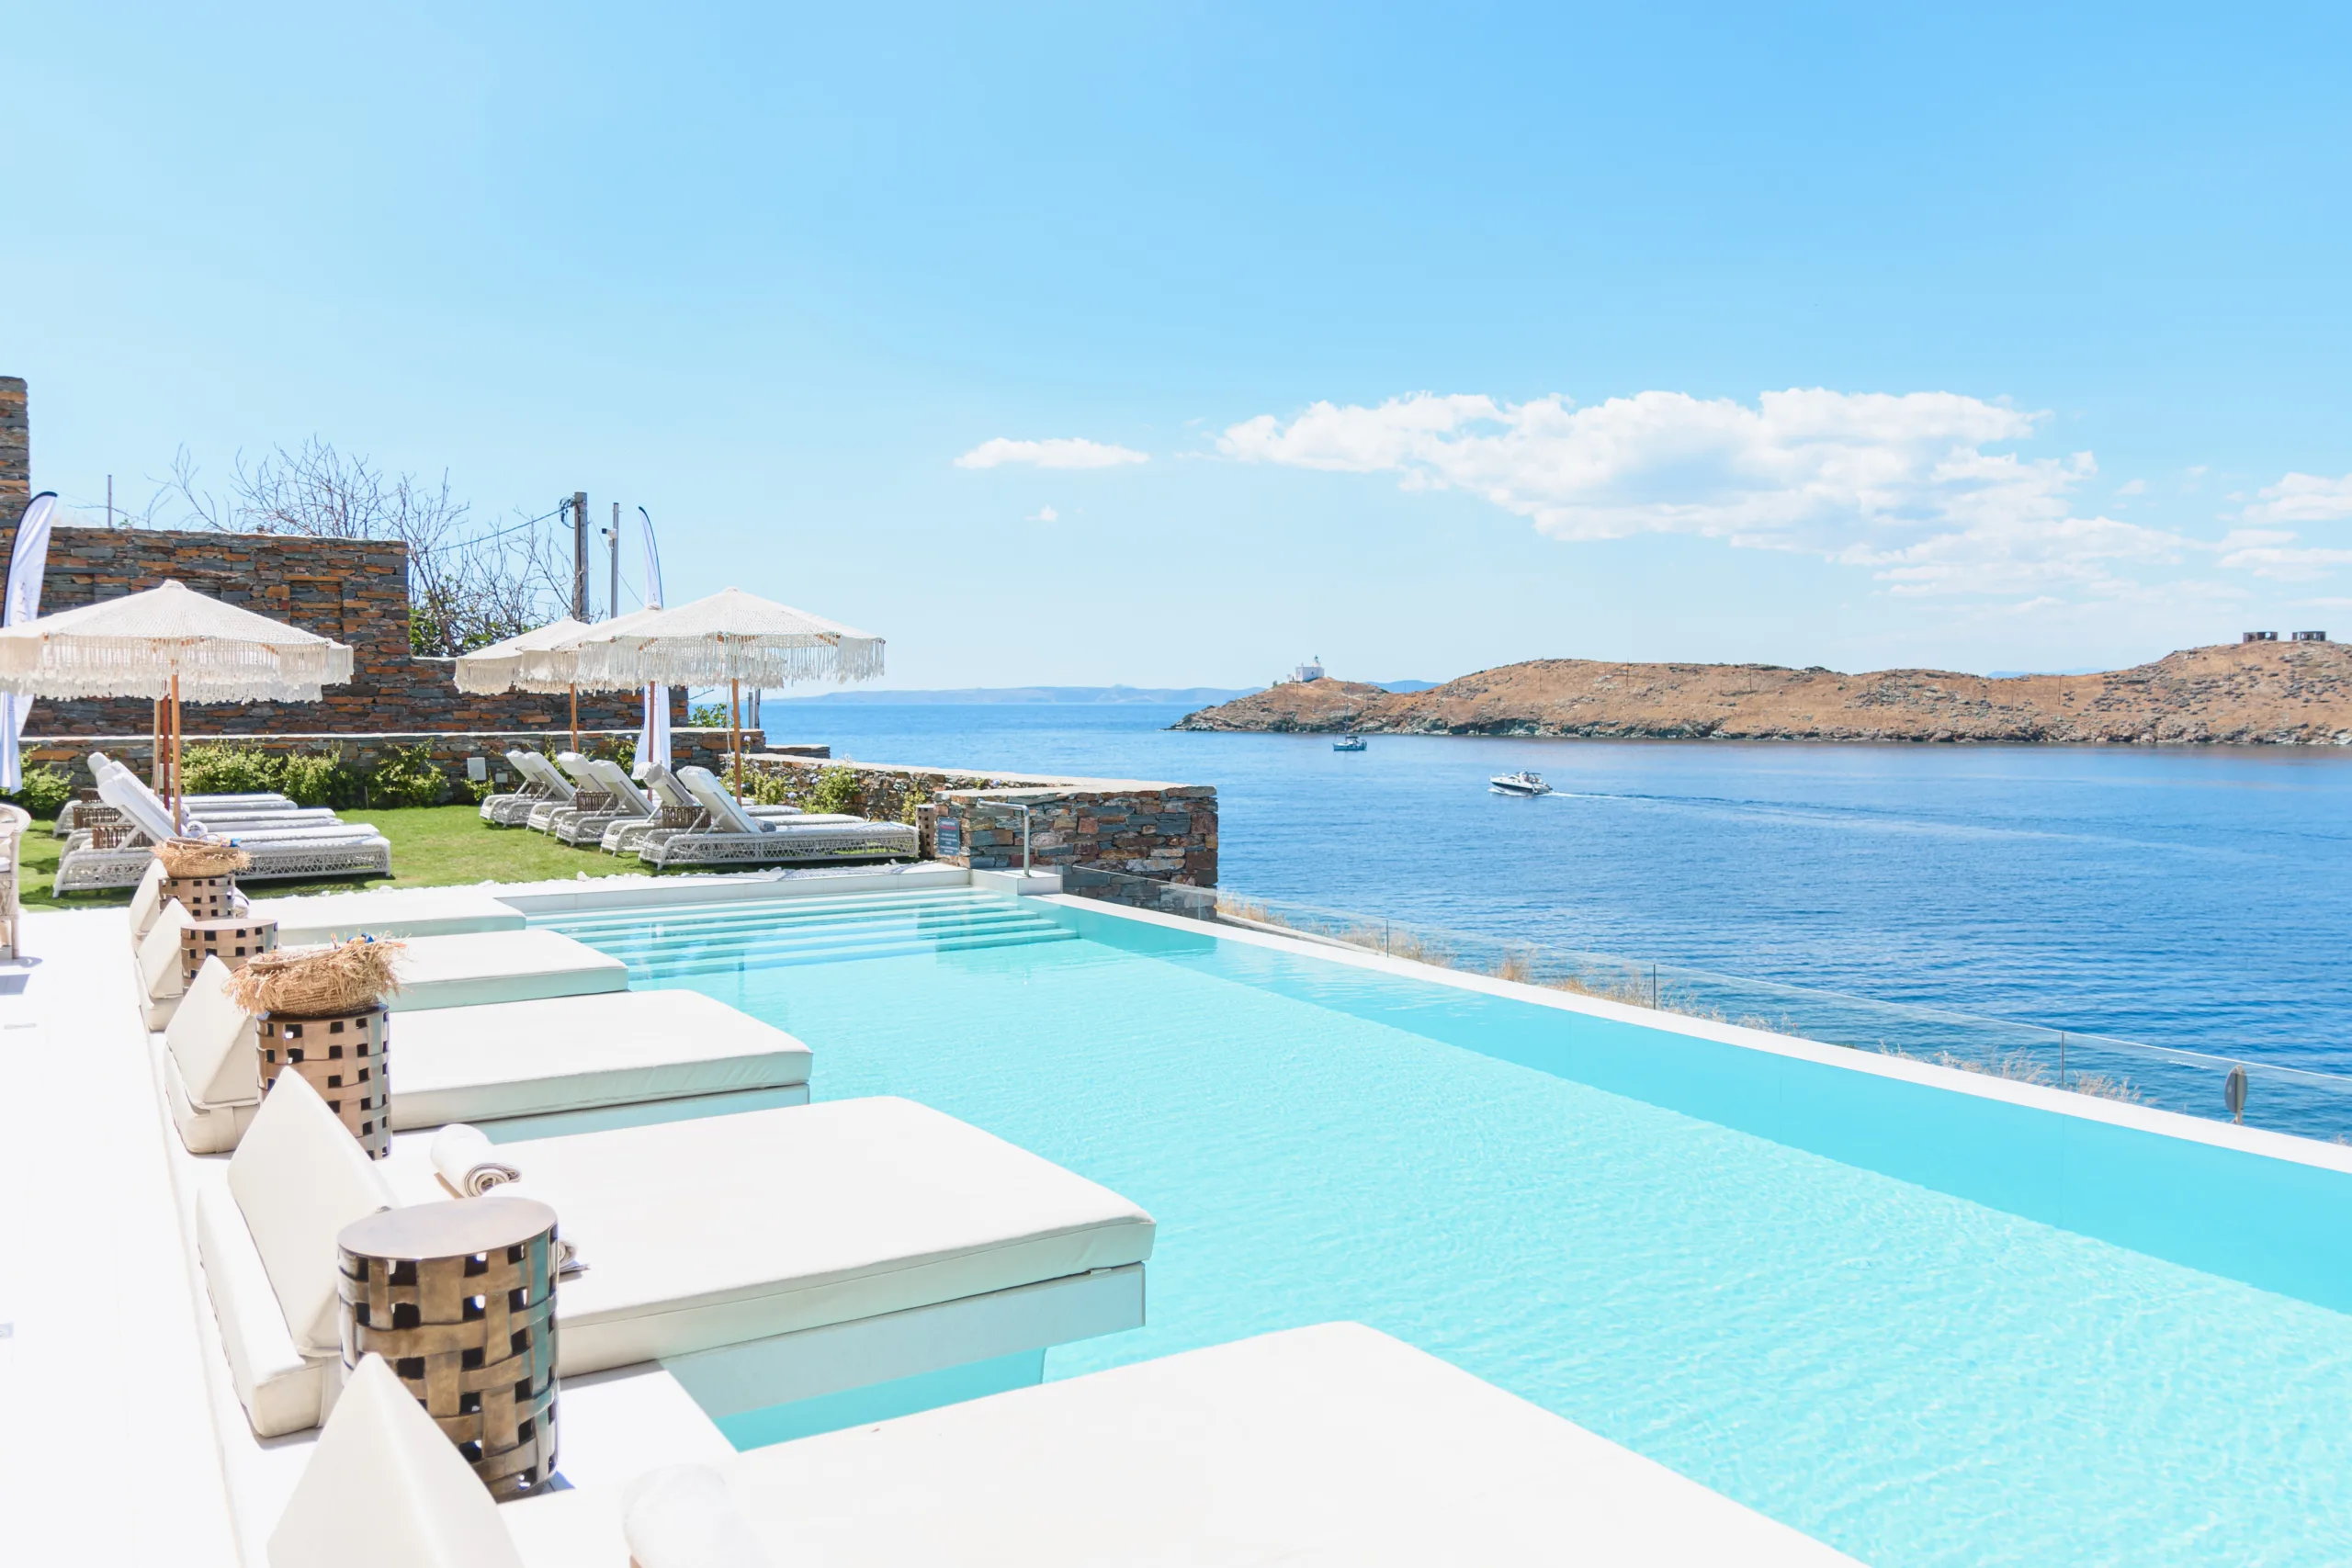 Ydor Hotel & Spa: Το μαγευτικό ξενοδοχείο στην Κέα με την απαράμιλλη ομορφιά και τη θέα στο γαλάζιο